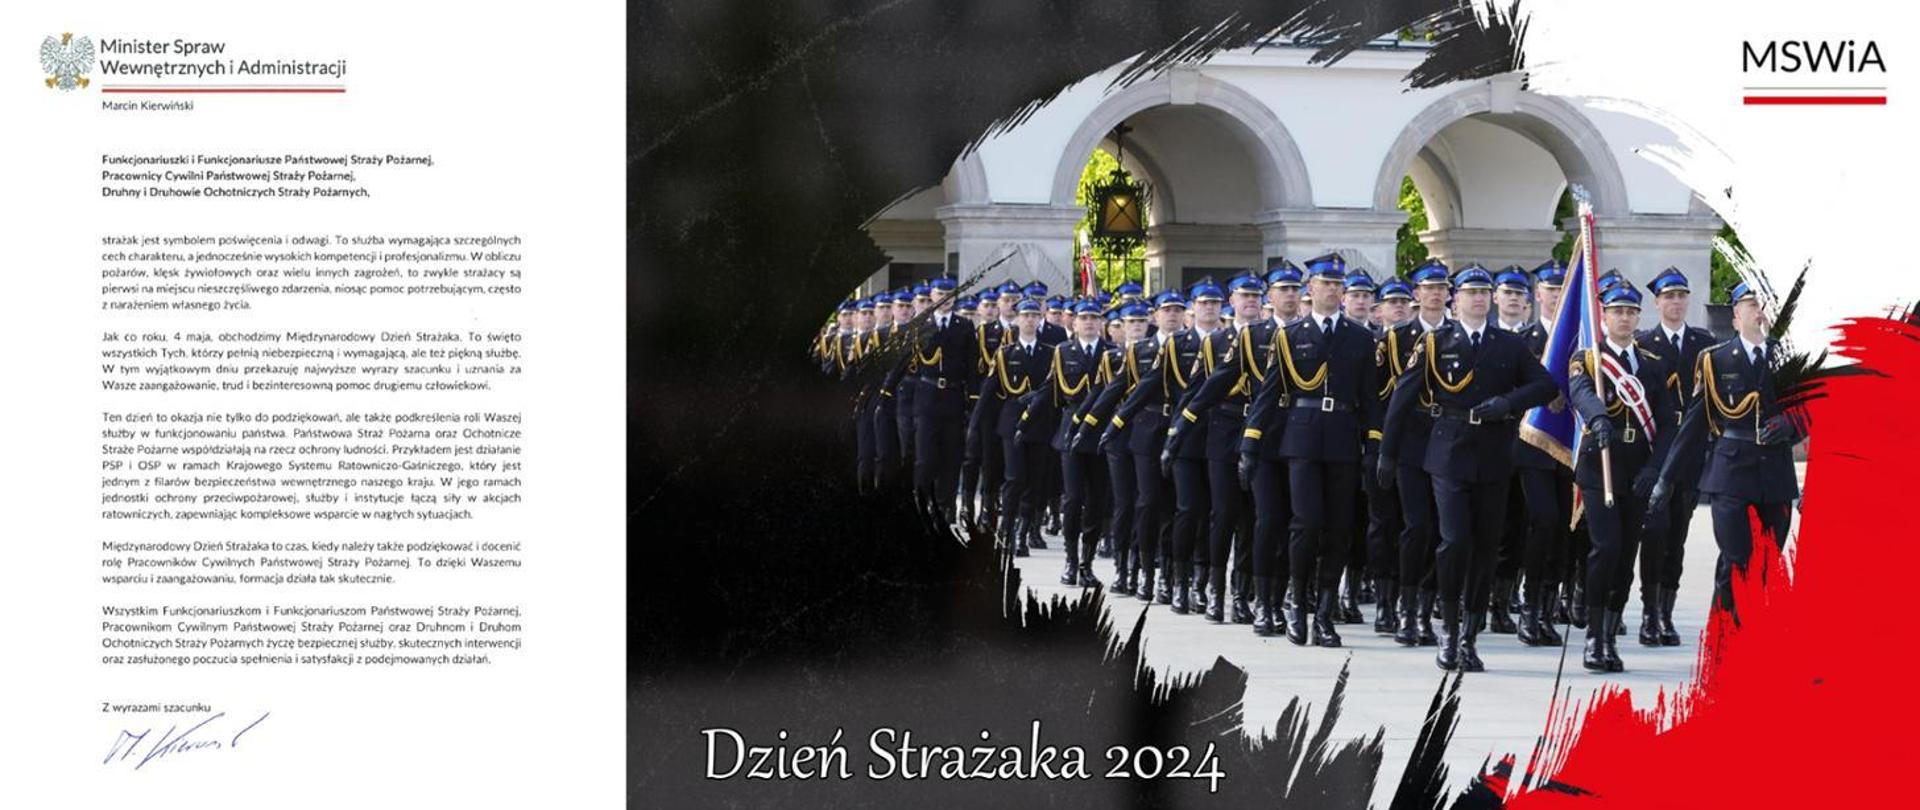 Po lewej stronie obraz życzeń Ministra Spraw Wewnętrznych i Administracji, po prawej stronie strażacy maszerujący ze sztandarem przed Grobem Nieznanego Żołnierza w Warszawie. Na dole napis Dzień Strażaka 2024